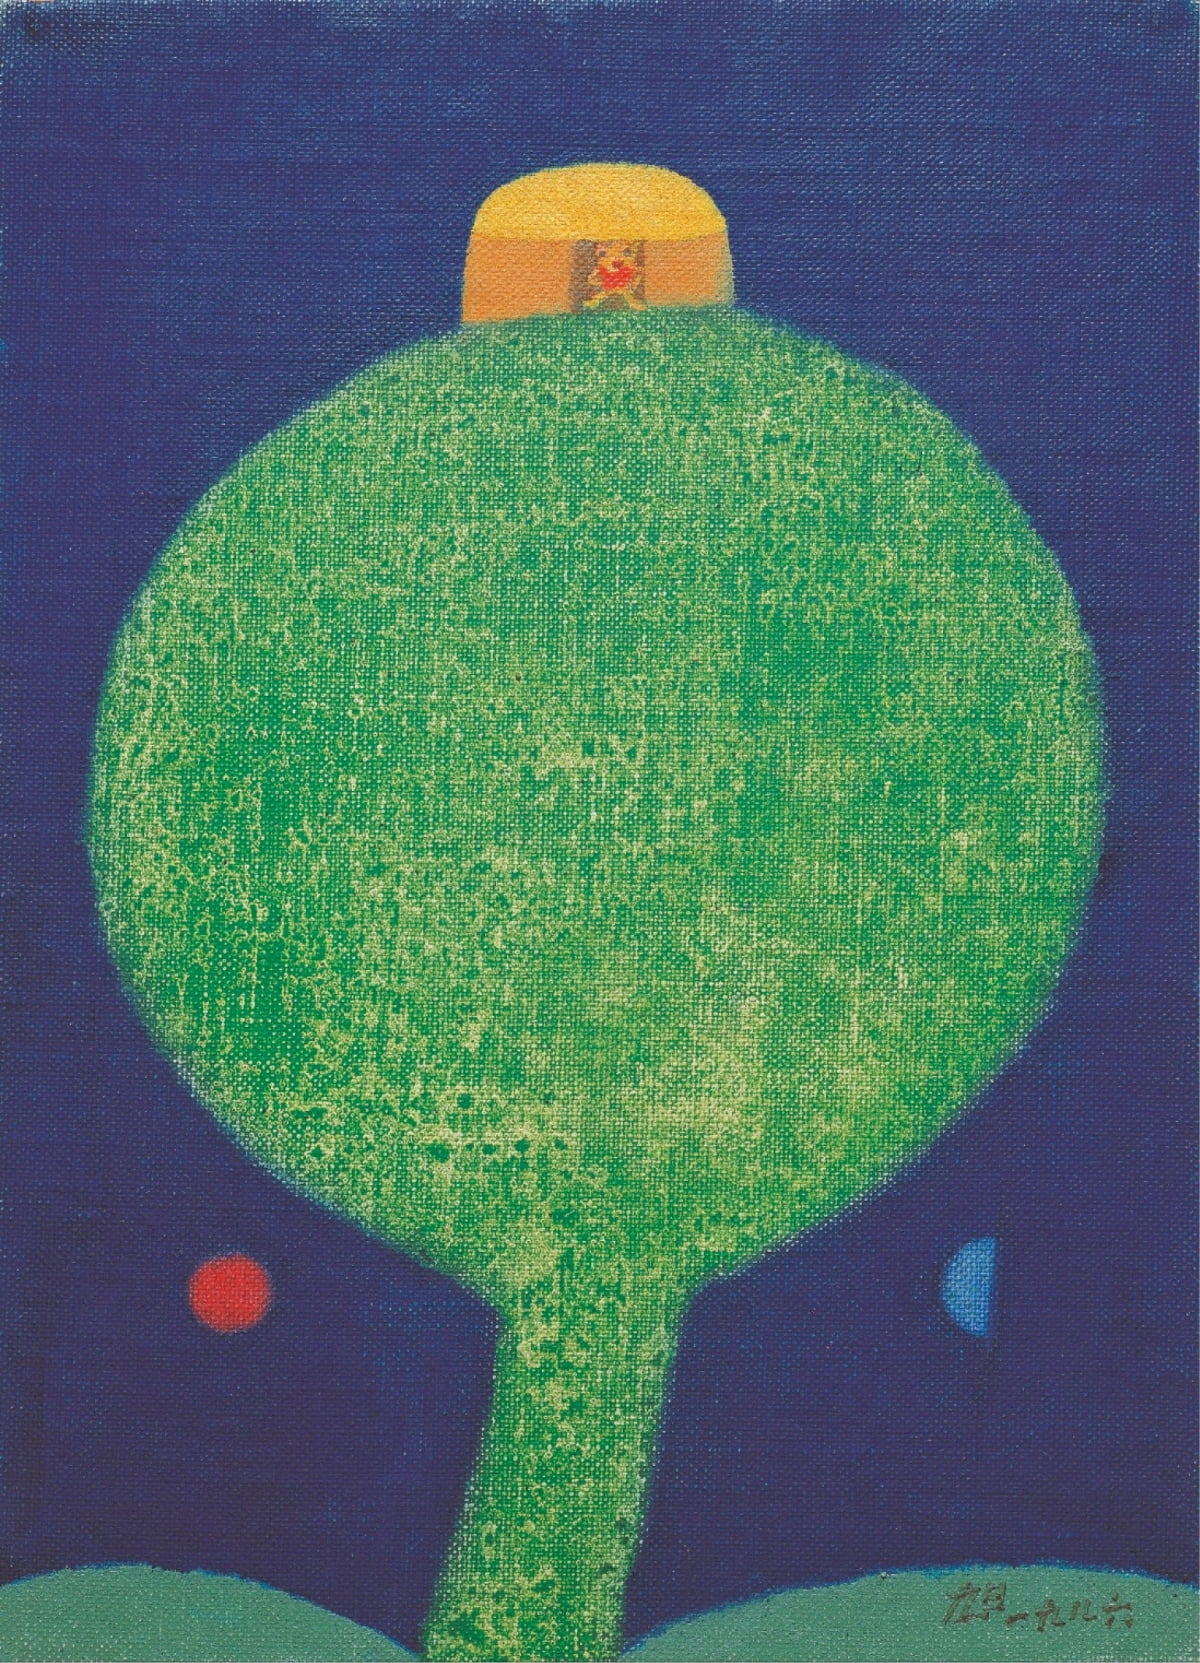  〈가족〉, 1976, 캔버스에 유화 물감, 13 × 16.5cm, 양주시립장욱진미술관 